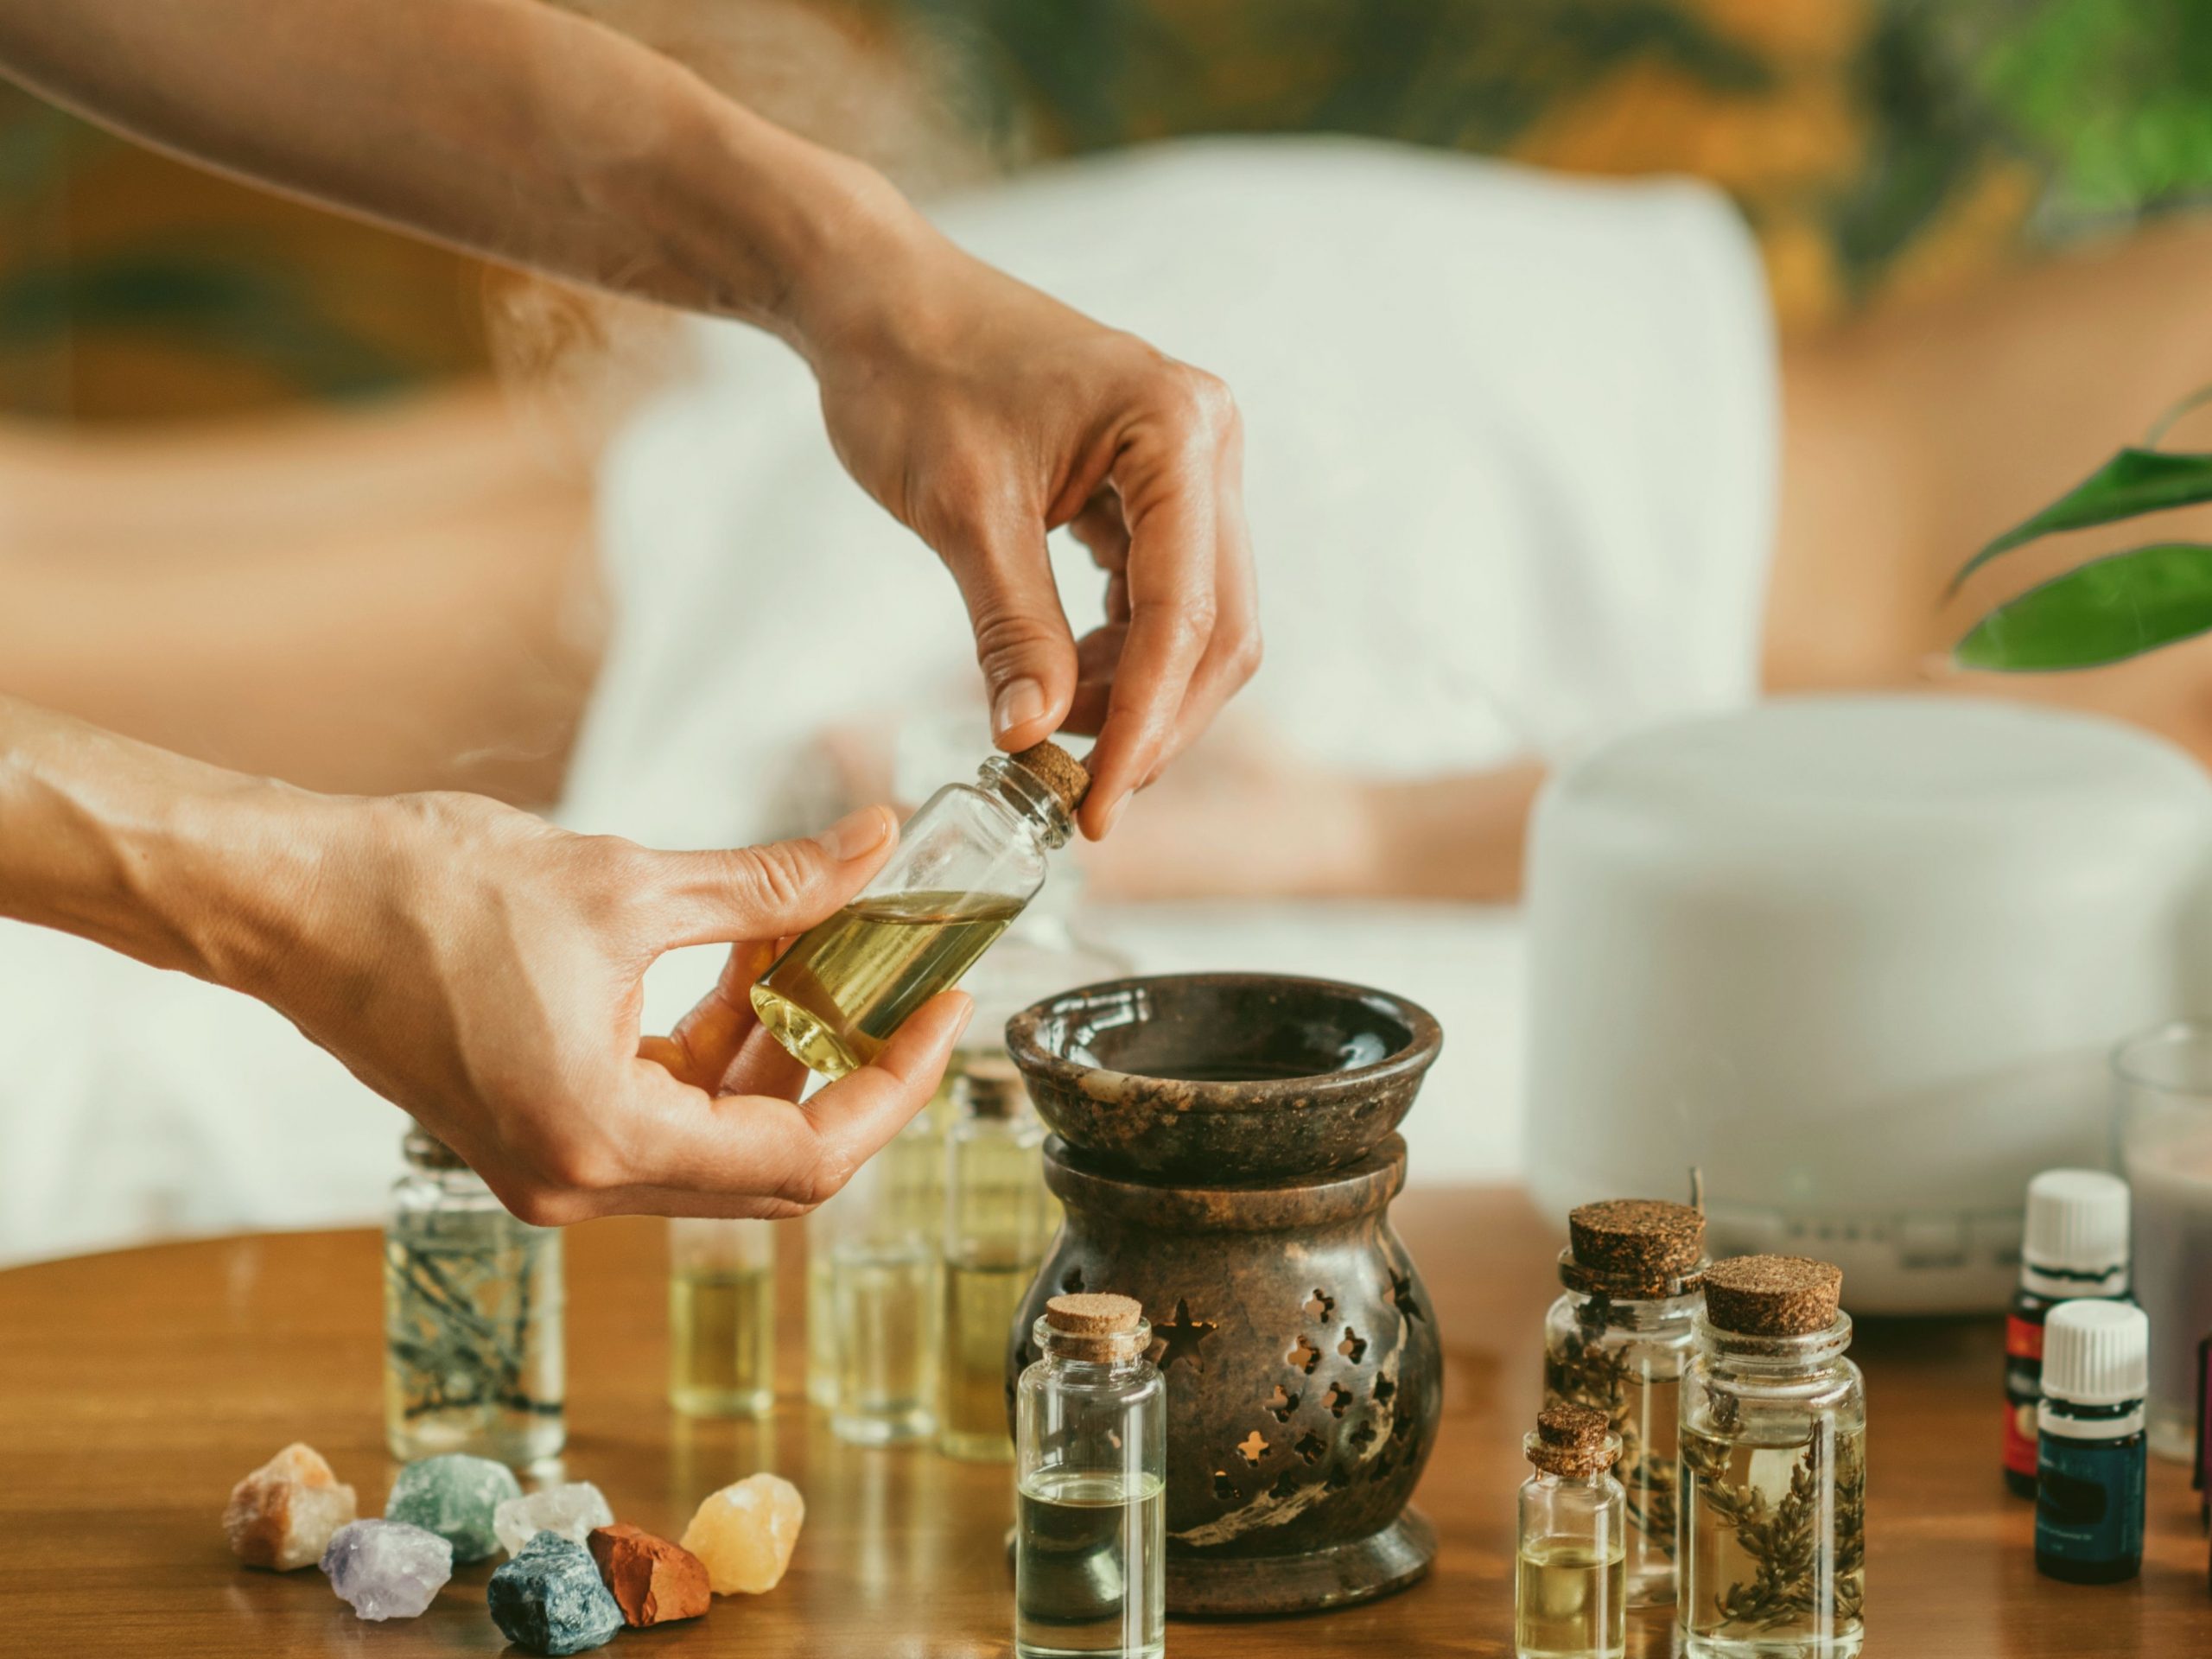 Ayurveda là một dạng y học cổ truyền có thể tích hợp liệu pháp mùi hương. Nó phổ biến ở Nam Á.